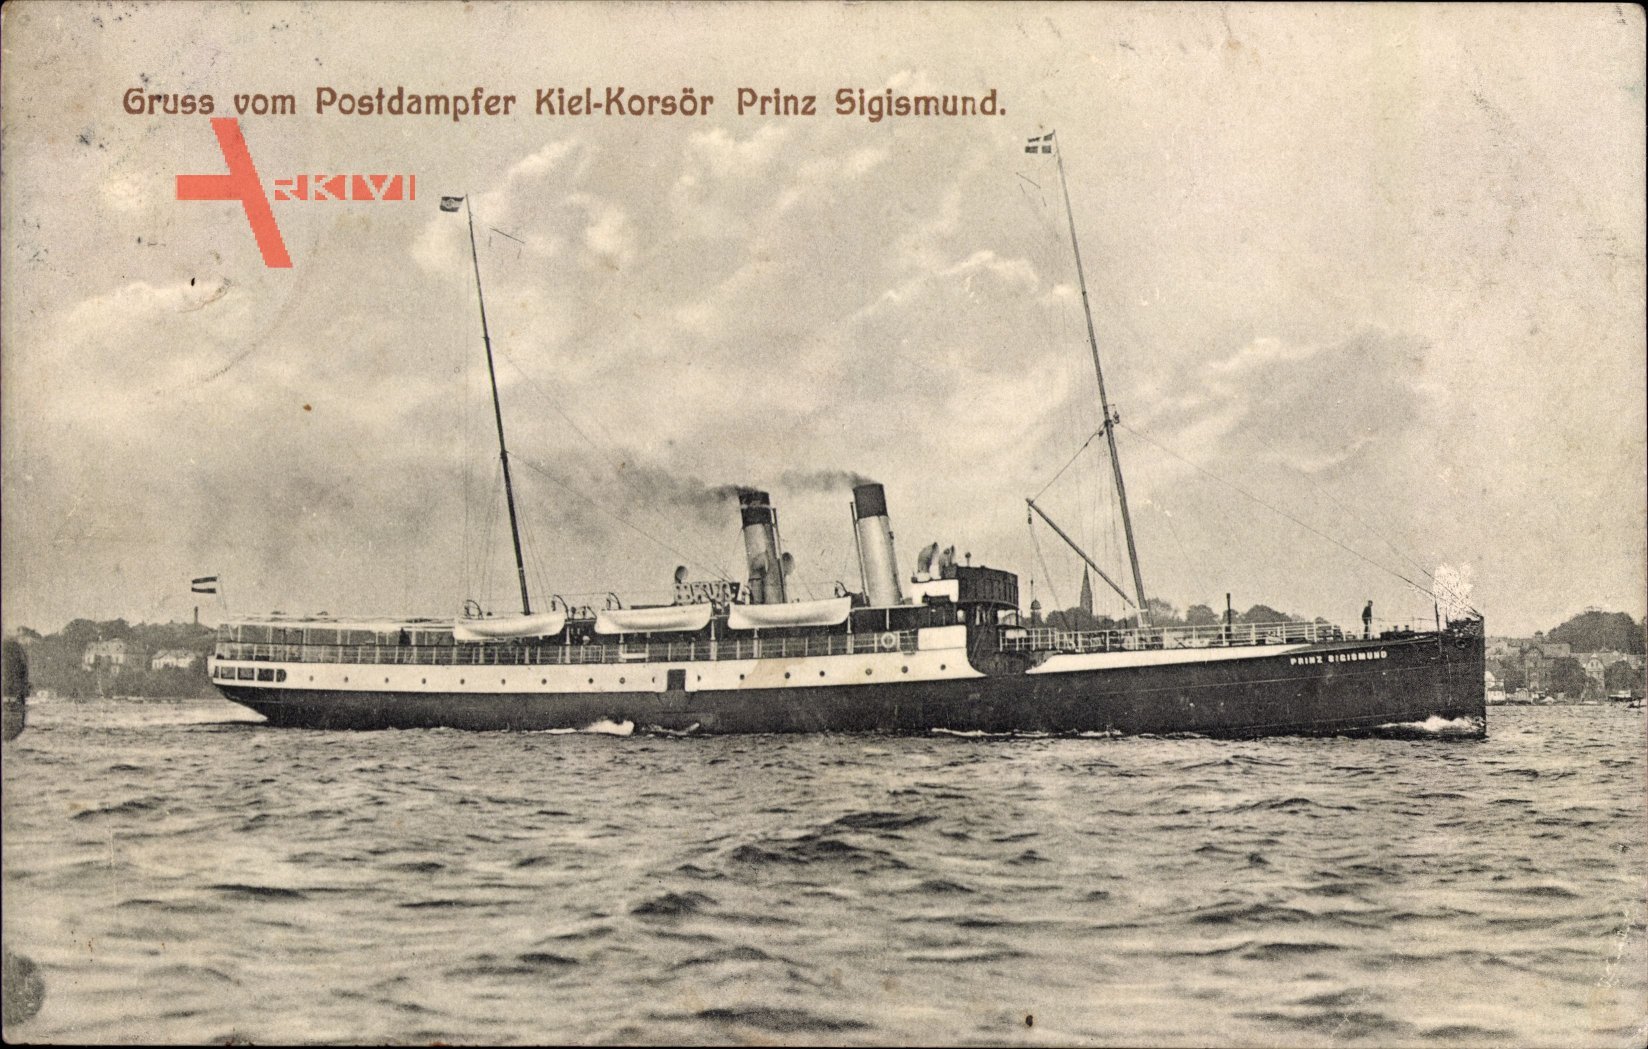 Gruß vom Postdampfer Kiel Korsör Prinz Sigismund, Fährschiff, Bäderdampfer